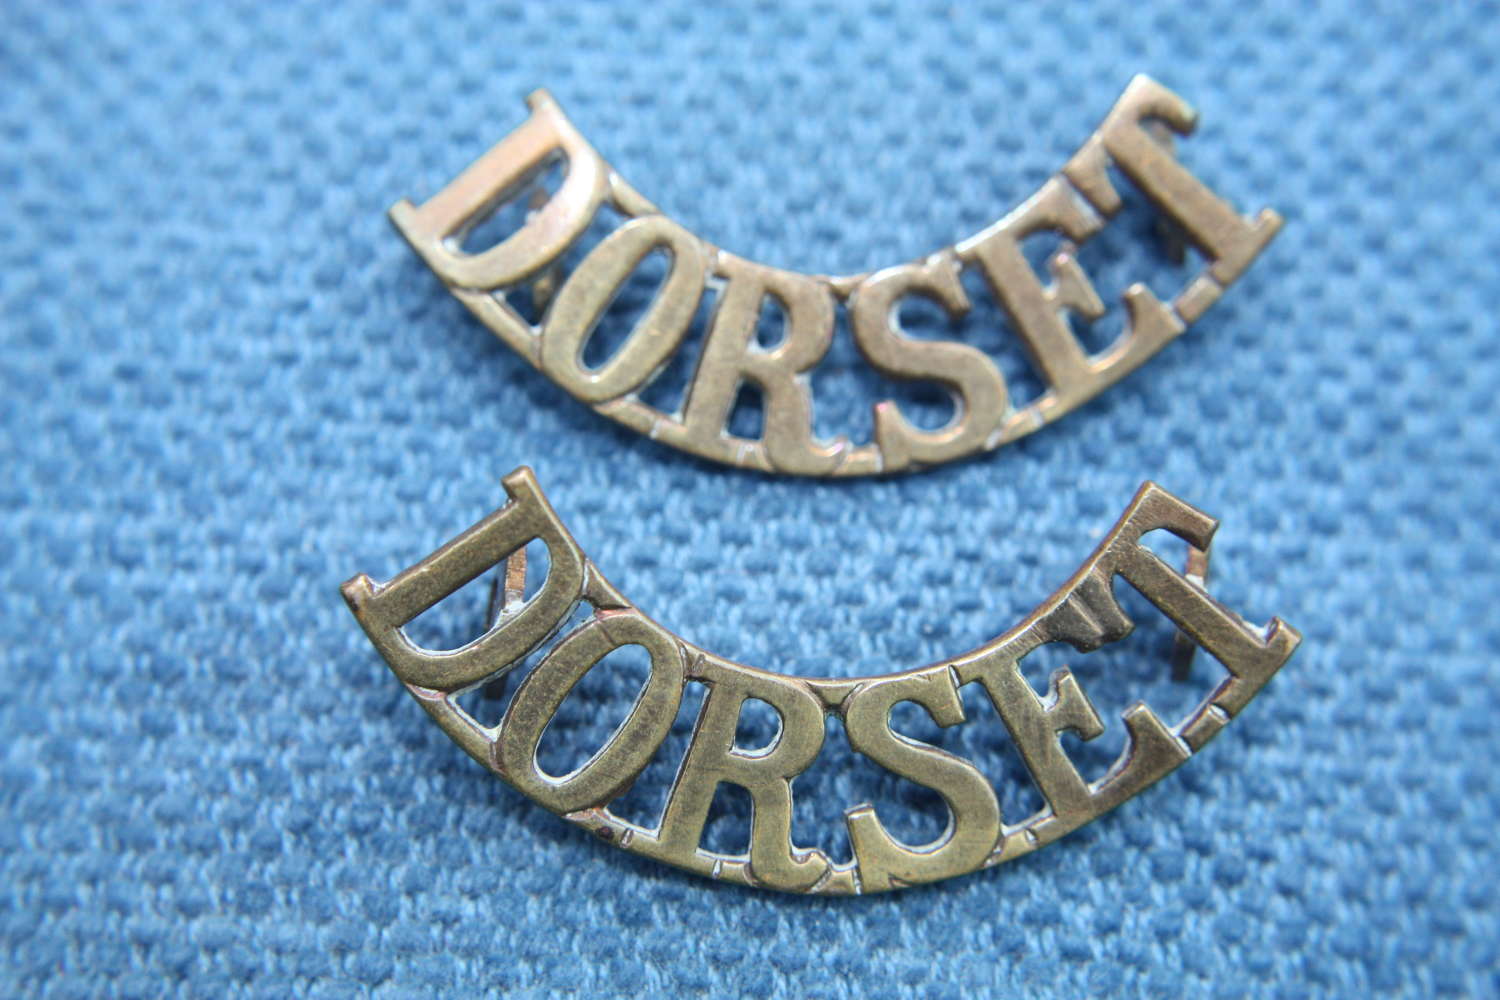 Pair matching WW1 Brass shoulder titles. Dorset Regiment :British Army